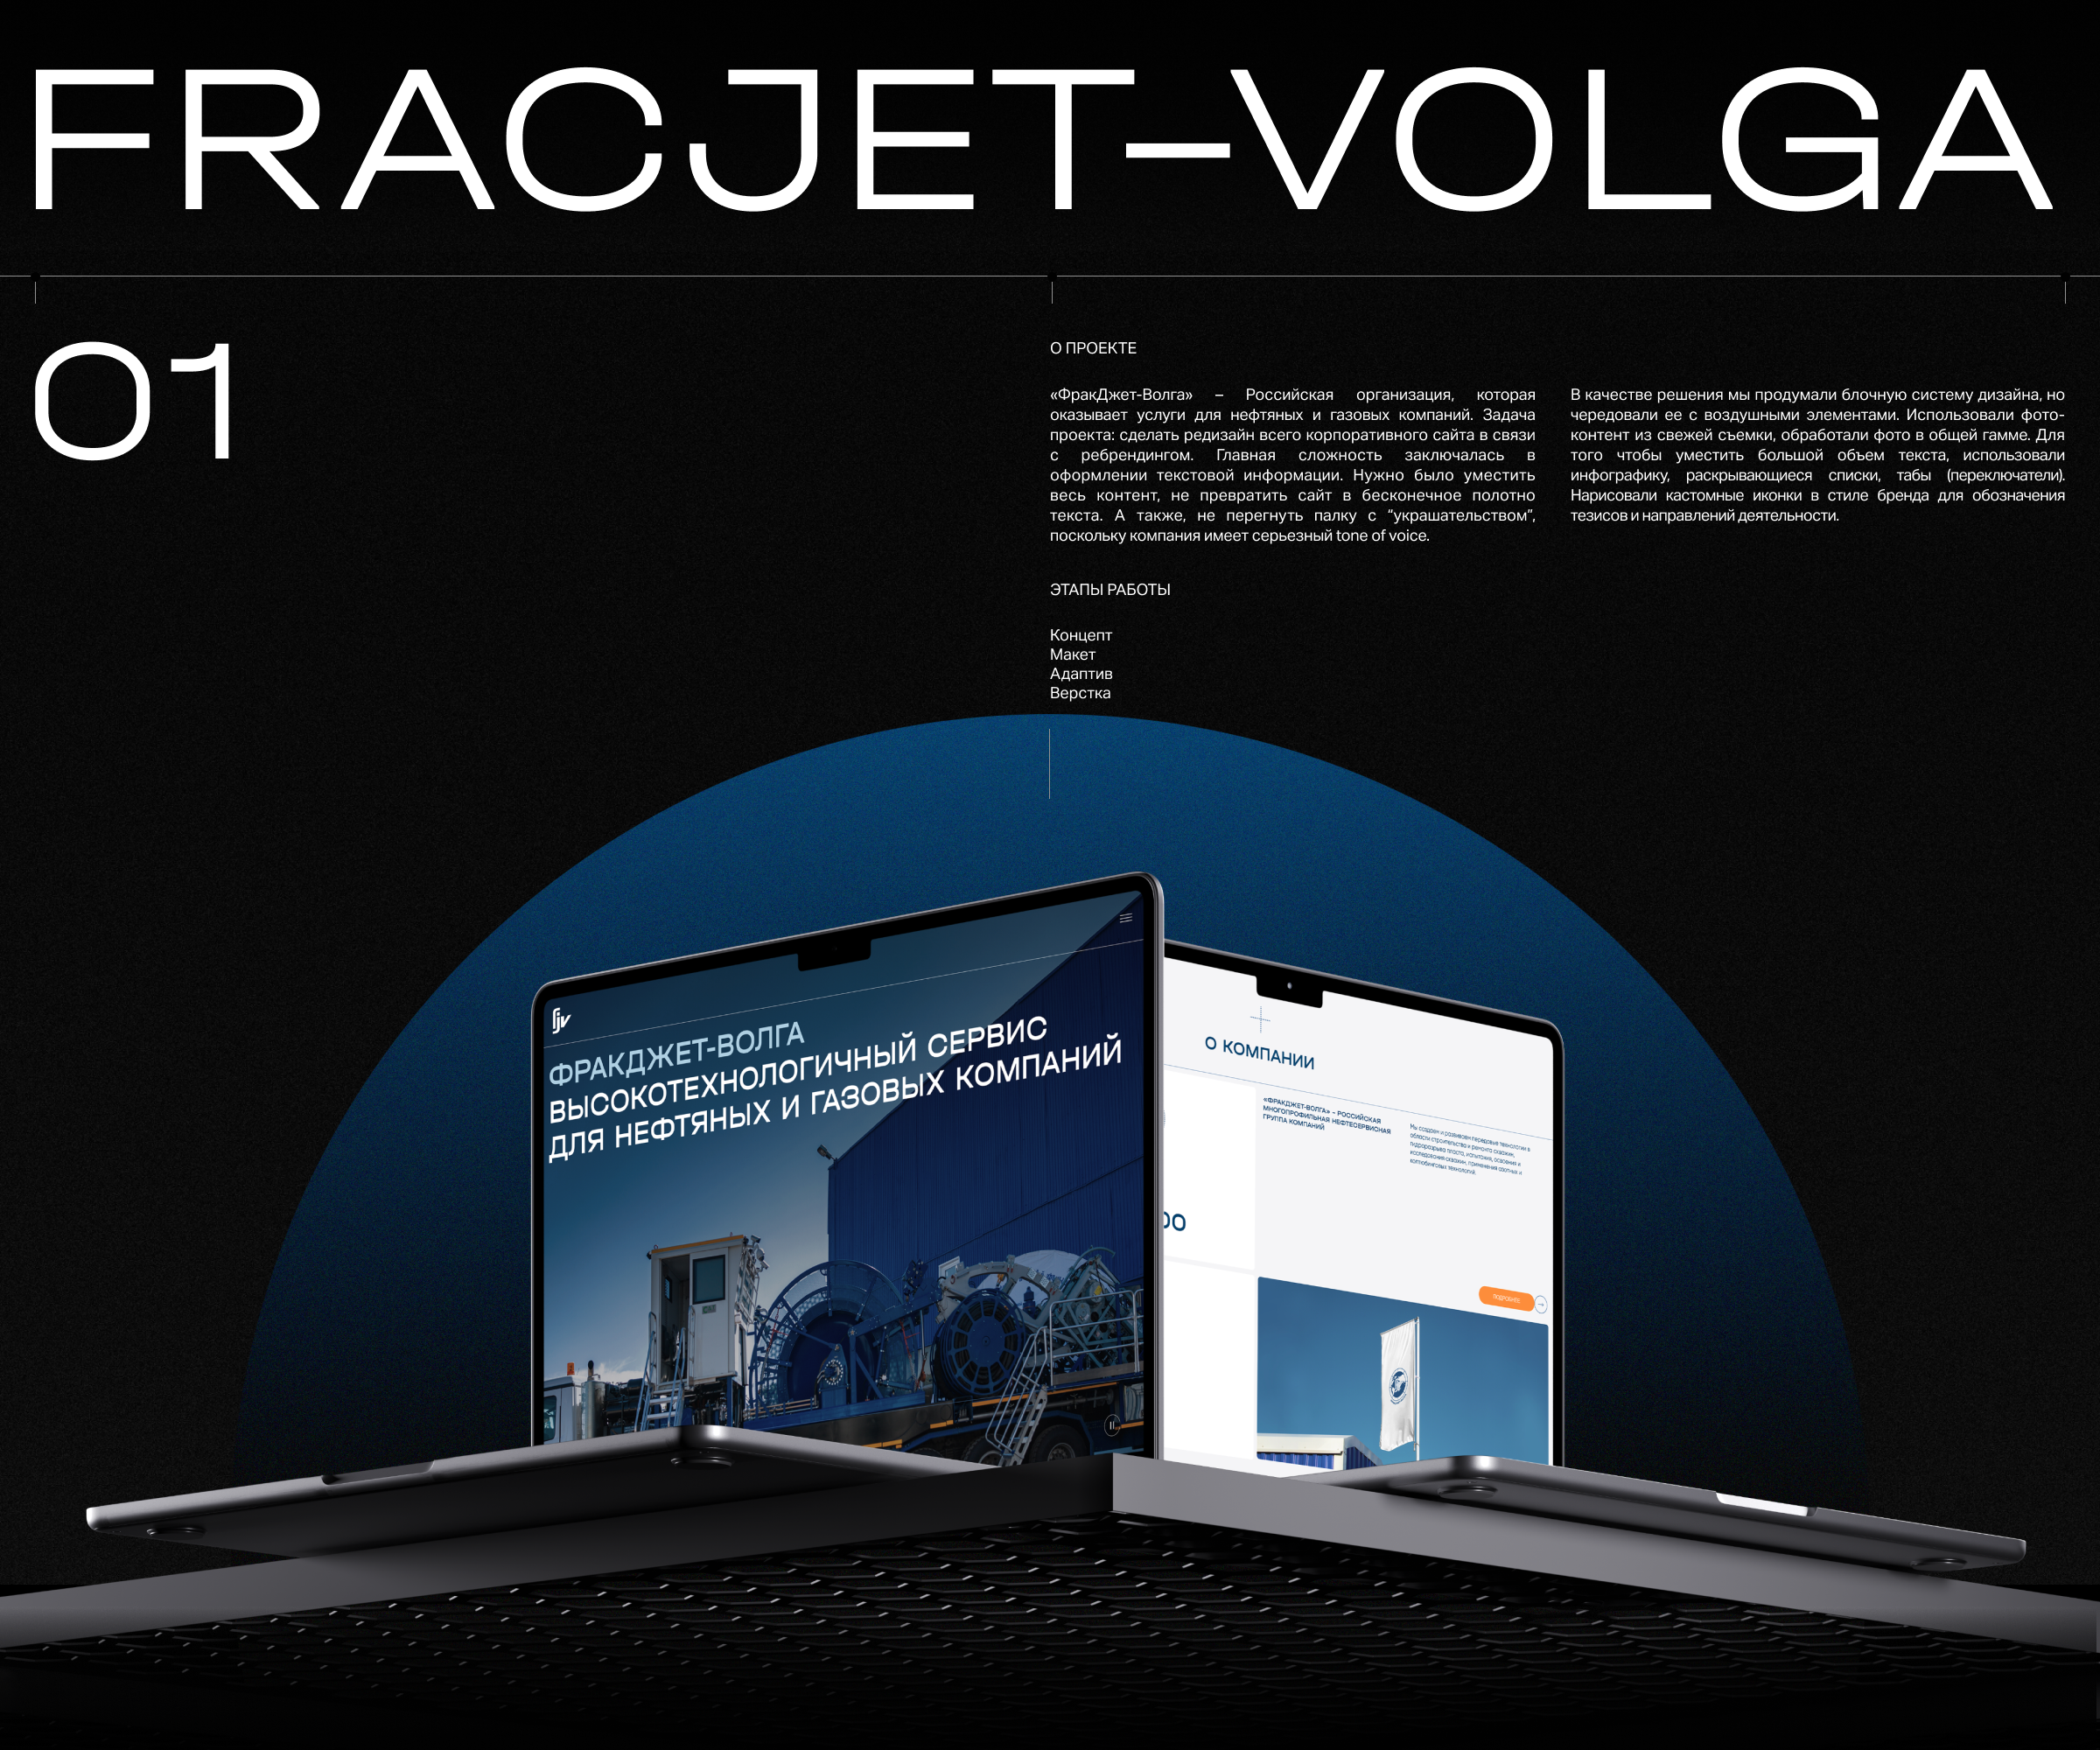 Fracjet-Volga | web. — Изображение №1 — Интерфейсы на Dprofile